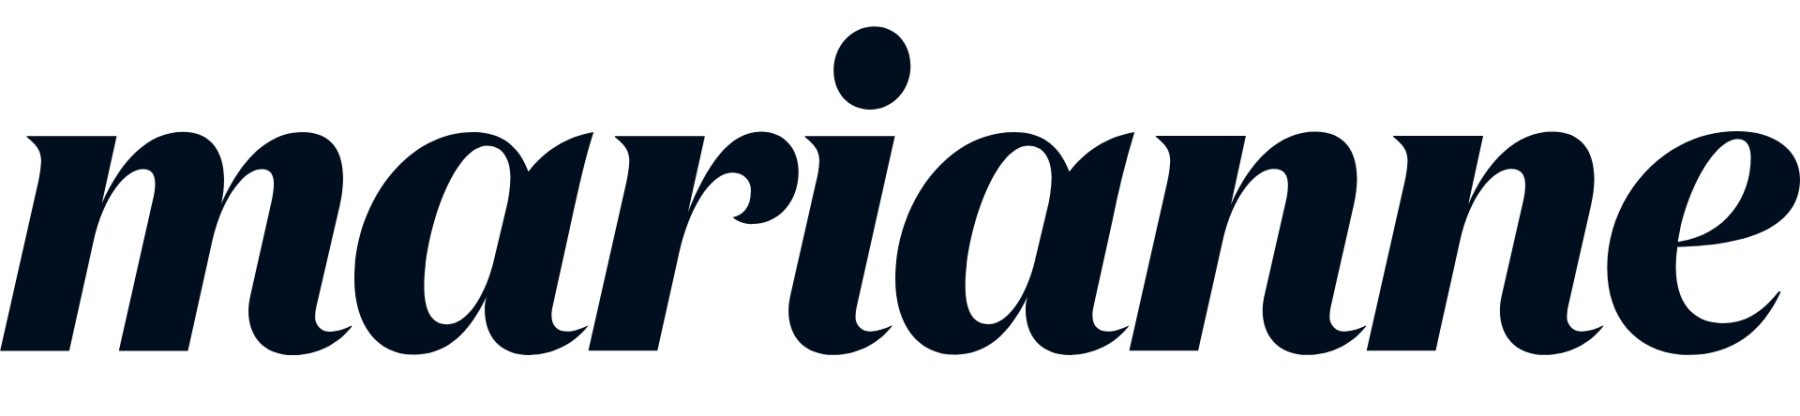 Časopis Marianne logo